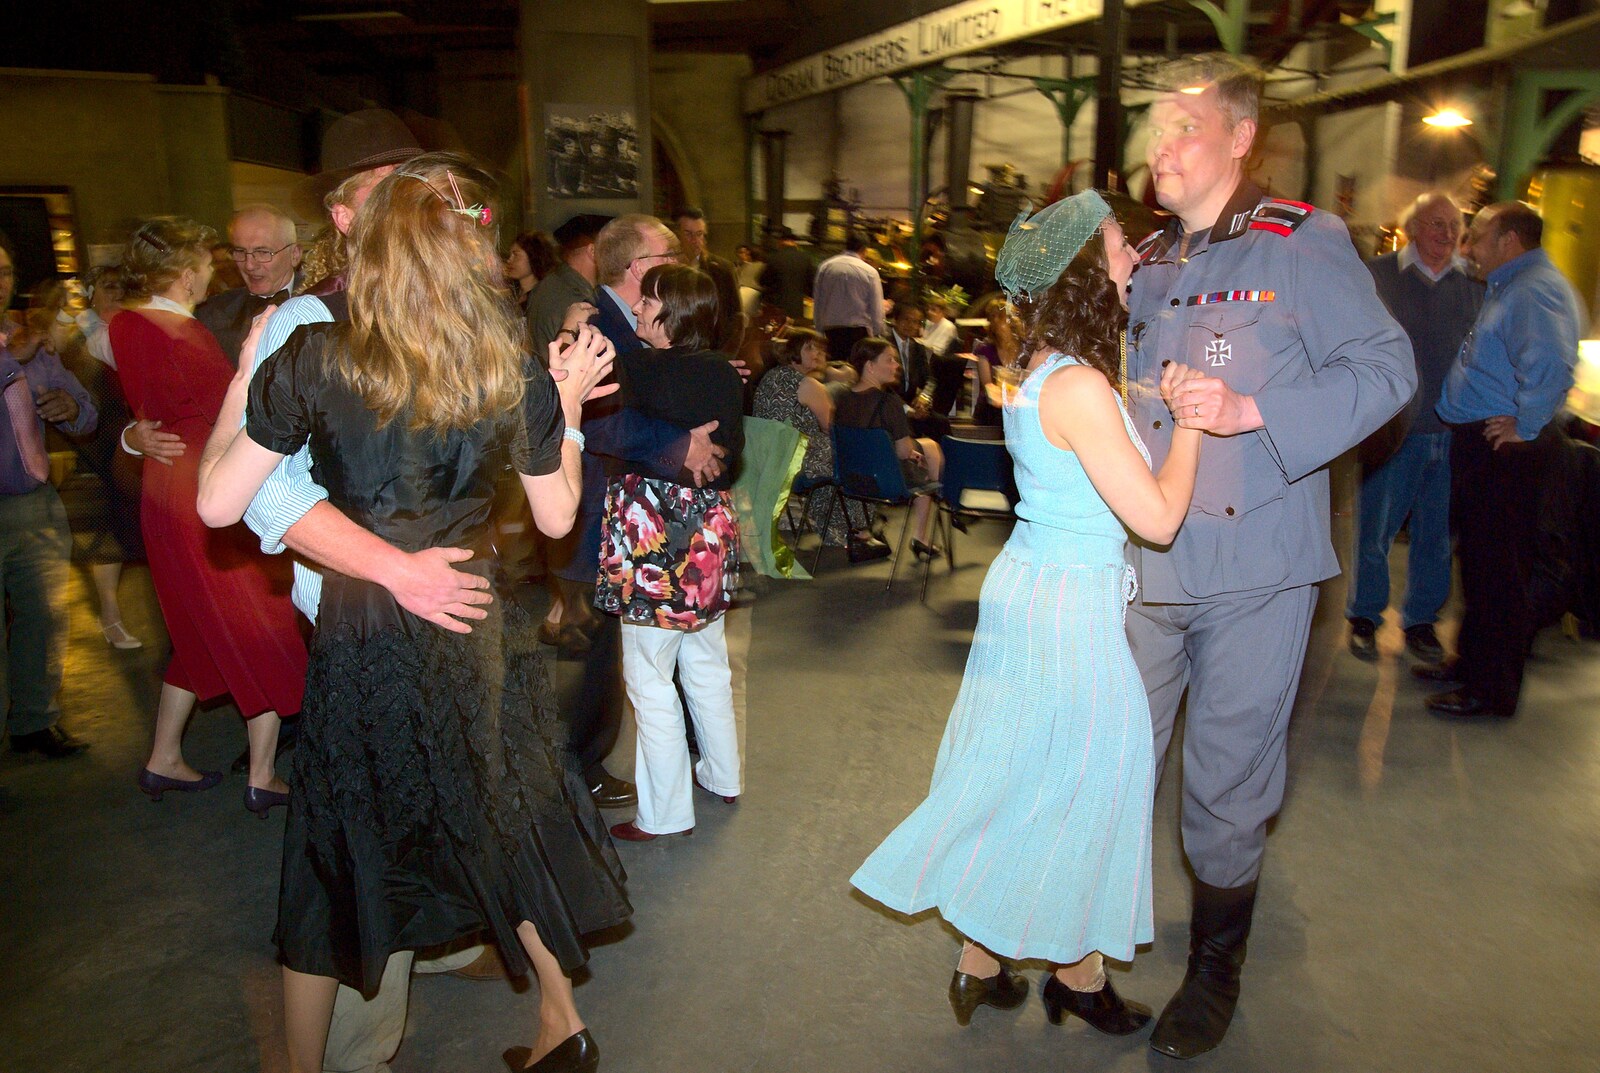 The Bressingham Blitz 1940s Dance, Bressingham Steam Museum, Norfolk - 21st May 2010: Dancing around